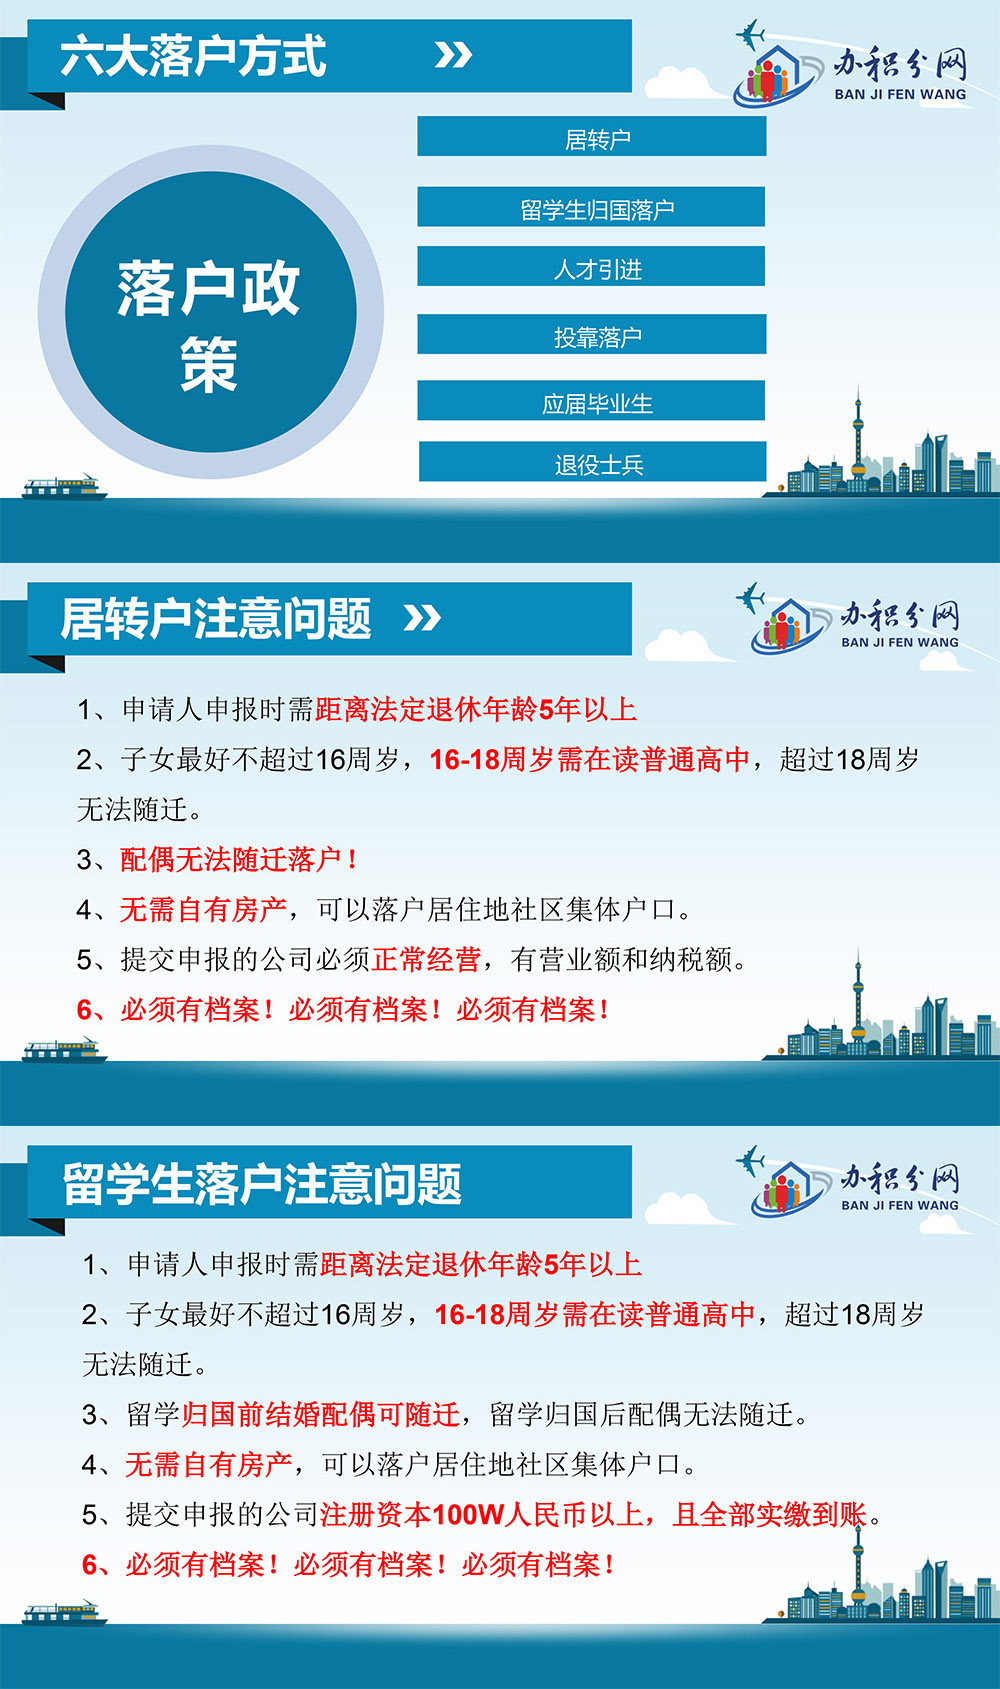 上海居转户落户条件：1. 持有《上海市居住证》满7年；2. 持证期间按照规定参加本市城镇社会保险满7年；3. 持证期间依法在本市缴纳所得税；4. 在本市被评聘为中级及以上专业技术职务或者具有技师（国家二级职业资格证书）以上职业资格，专业、工种与所聘岗位相对应，且应达到一定的市场化评价标准；5. 符合国家及本市现行计划生育政策，无刑事犯罪记录等其他不宜转办常住户口的情形。注：这里还要满足市场化标准即最近4年累计36个月社保缴费基数在1.3倍以上，部分区域河能要求1.5倍以上。